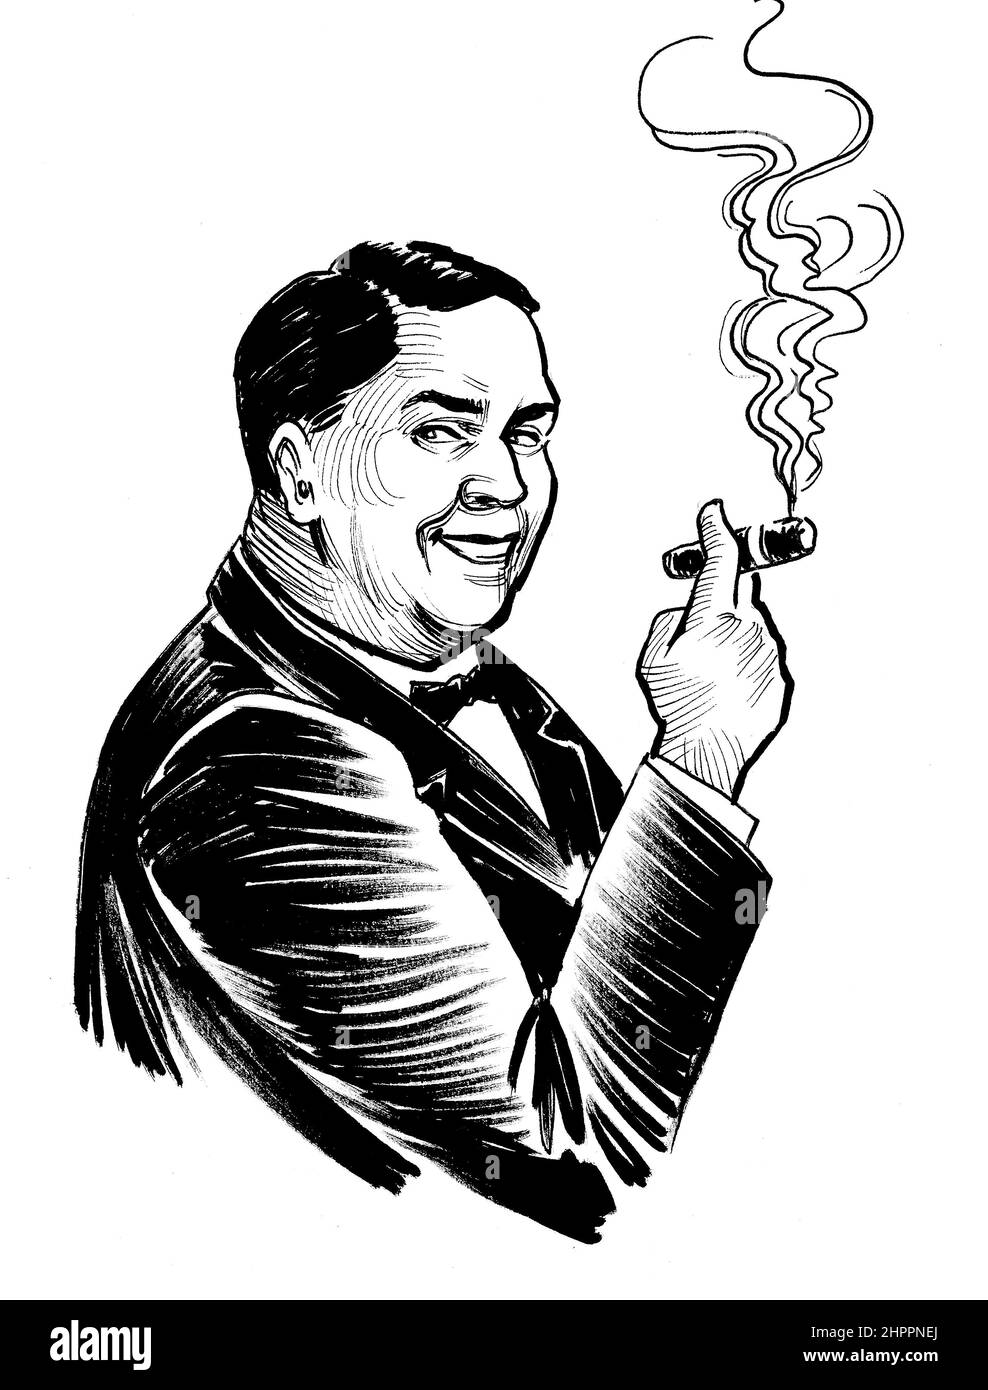 Homme d'affaires fumant du cigare. Dessin noir et blanc Banque D'Images